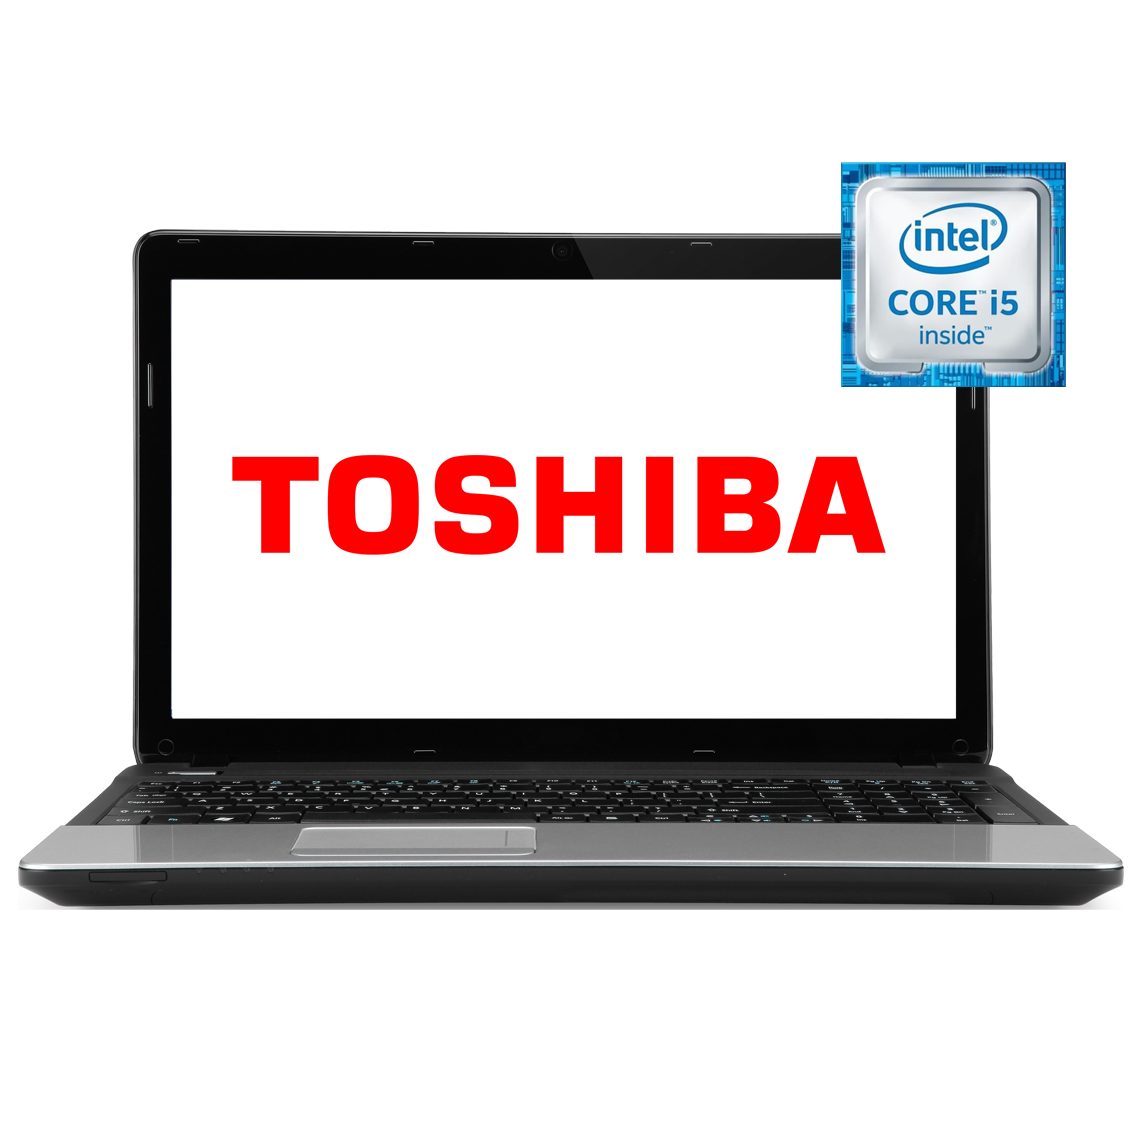 Toshiba - 15 inch Core i5 4th Gen